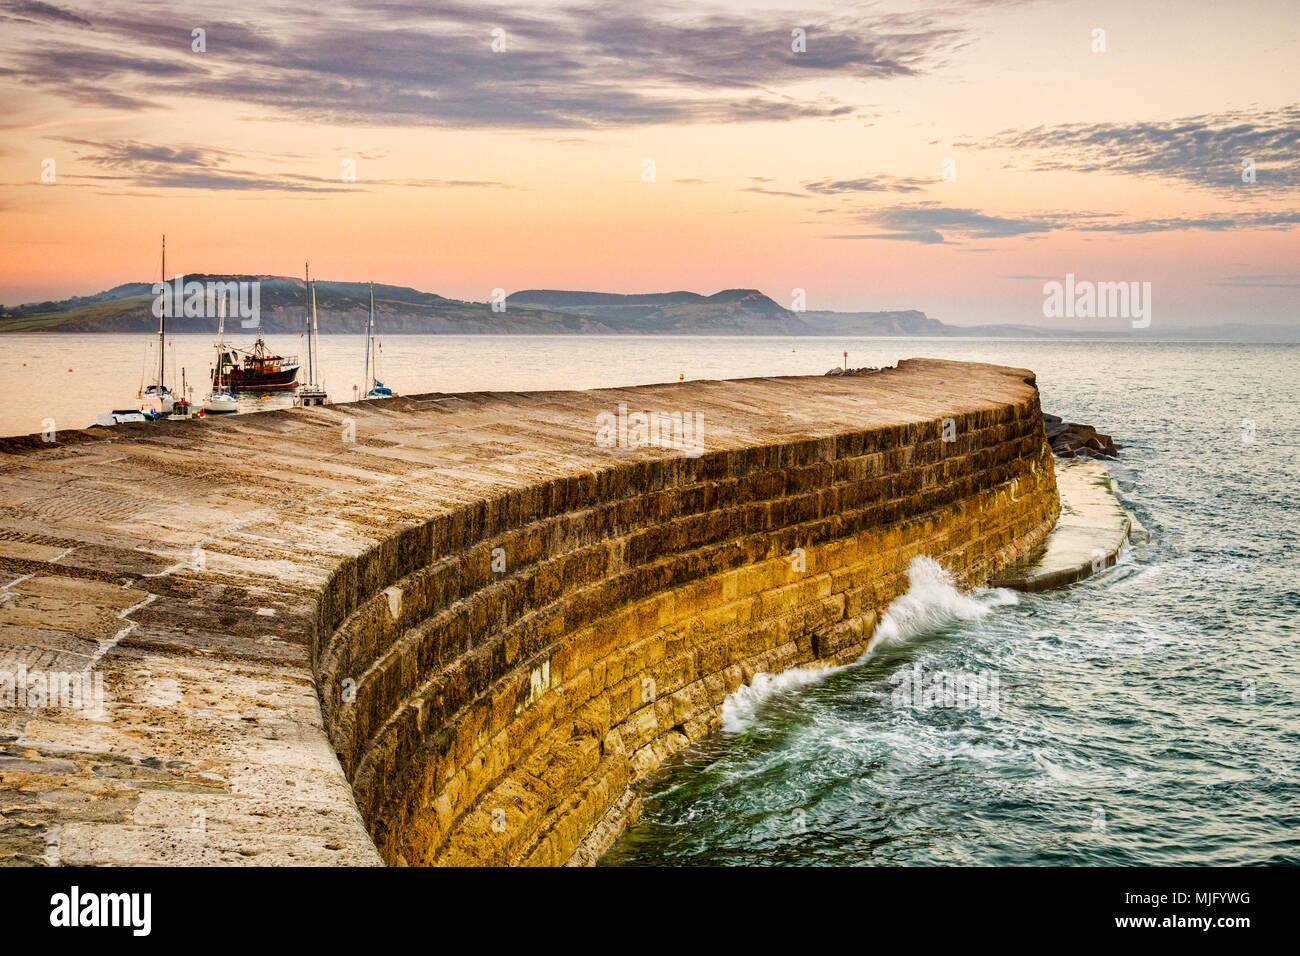 La Cobb, le port historique brise-lames à Lyme Regis, dans le Dorset, Angleterre, un soir d'été. Banque D'Images